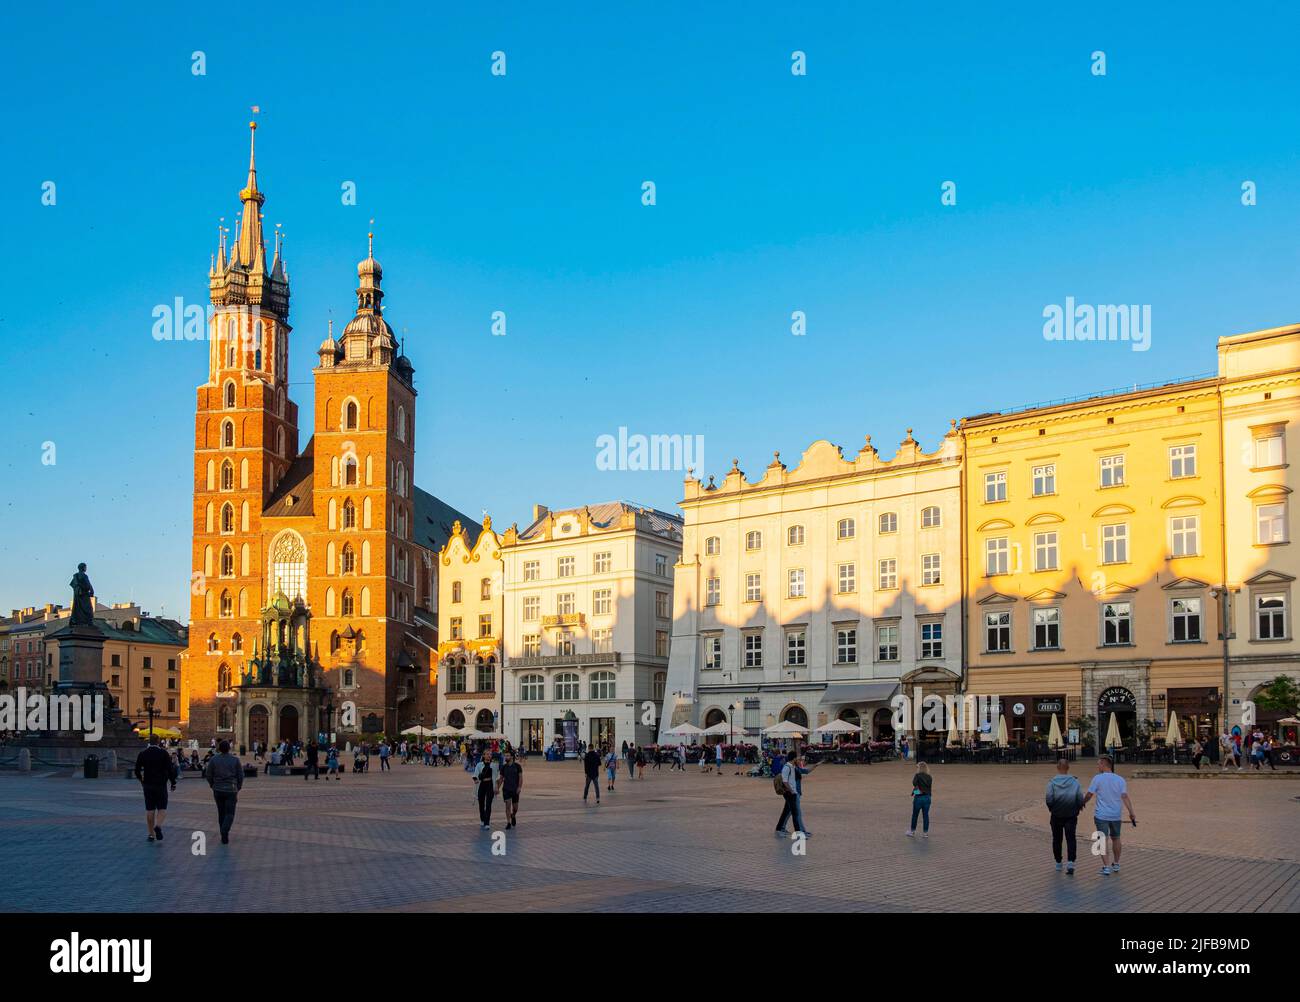 Polonia, Pequeña Polonia, Cracovia, casco antiguo (Stare Mastro), declarado Patrimonio de la Humanidad por la UNESCO, plaza del mercado (Rynek Glowny), Iglesia de Nuestra Señora (Santa María) Foto de stock